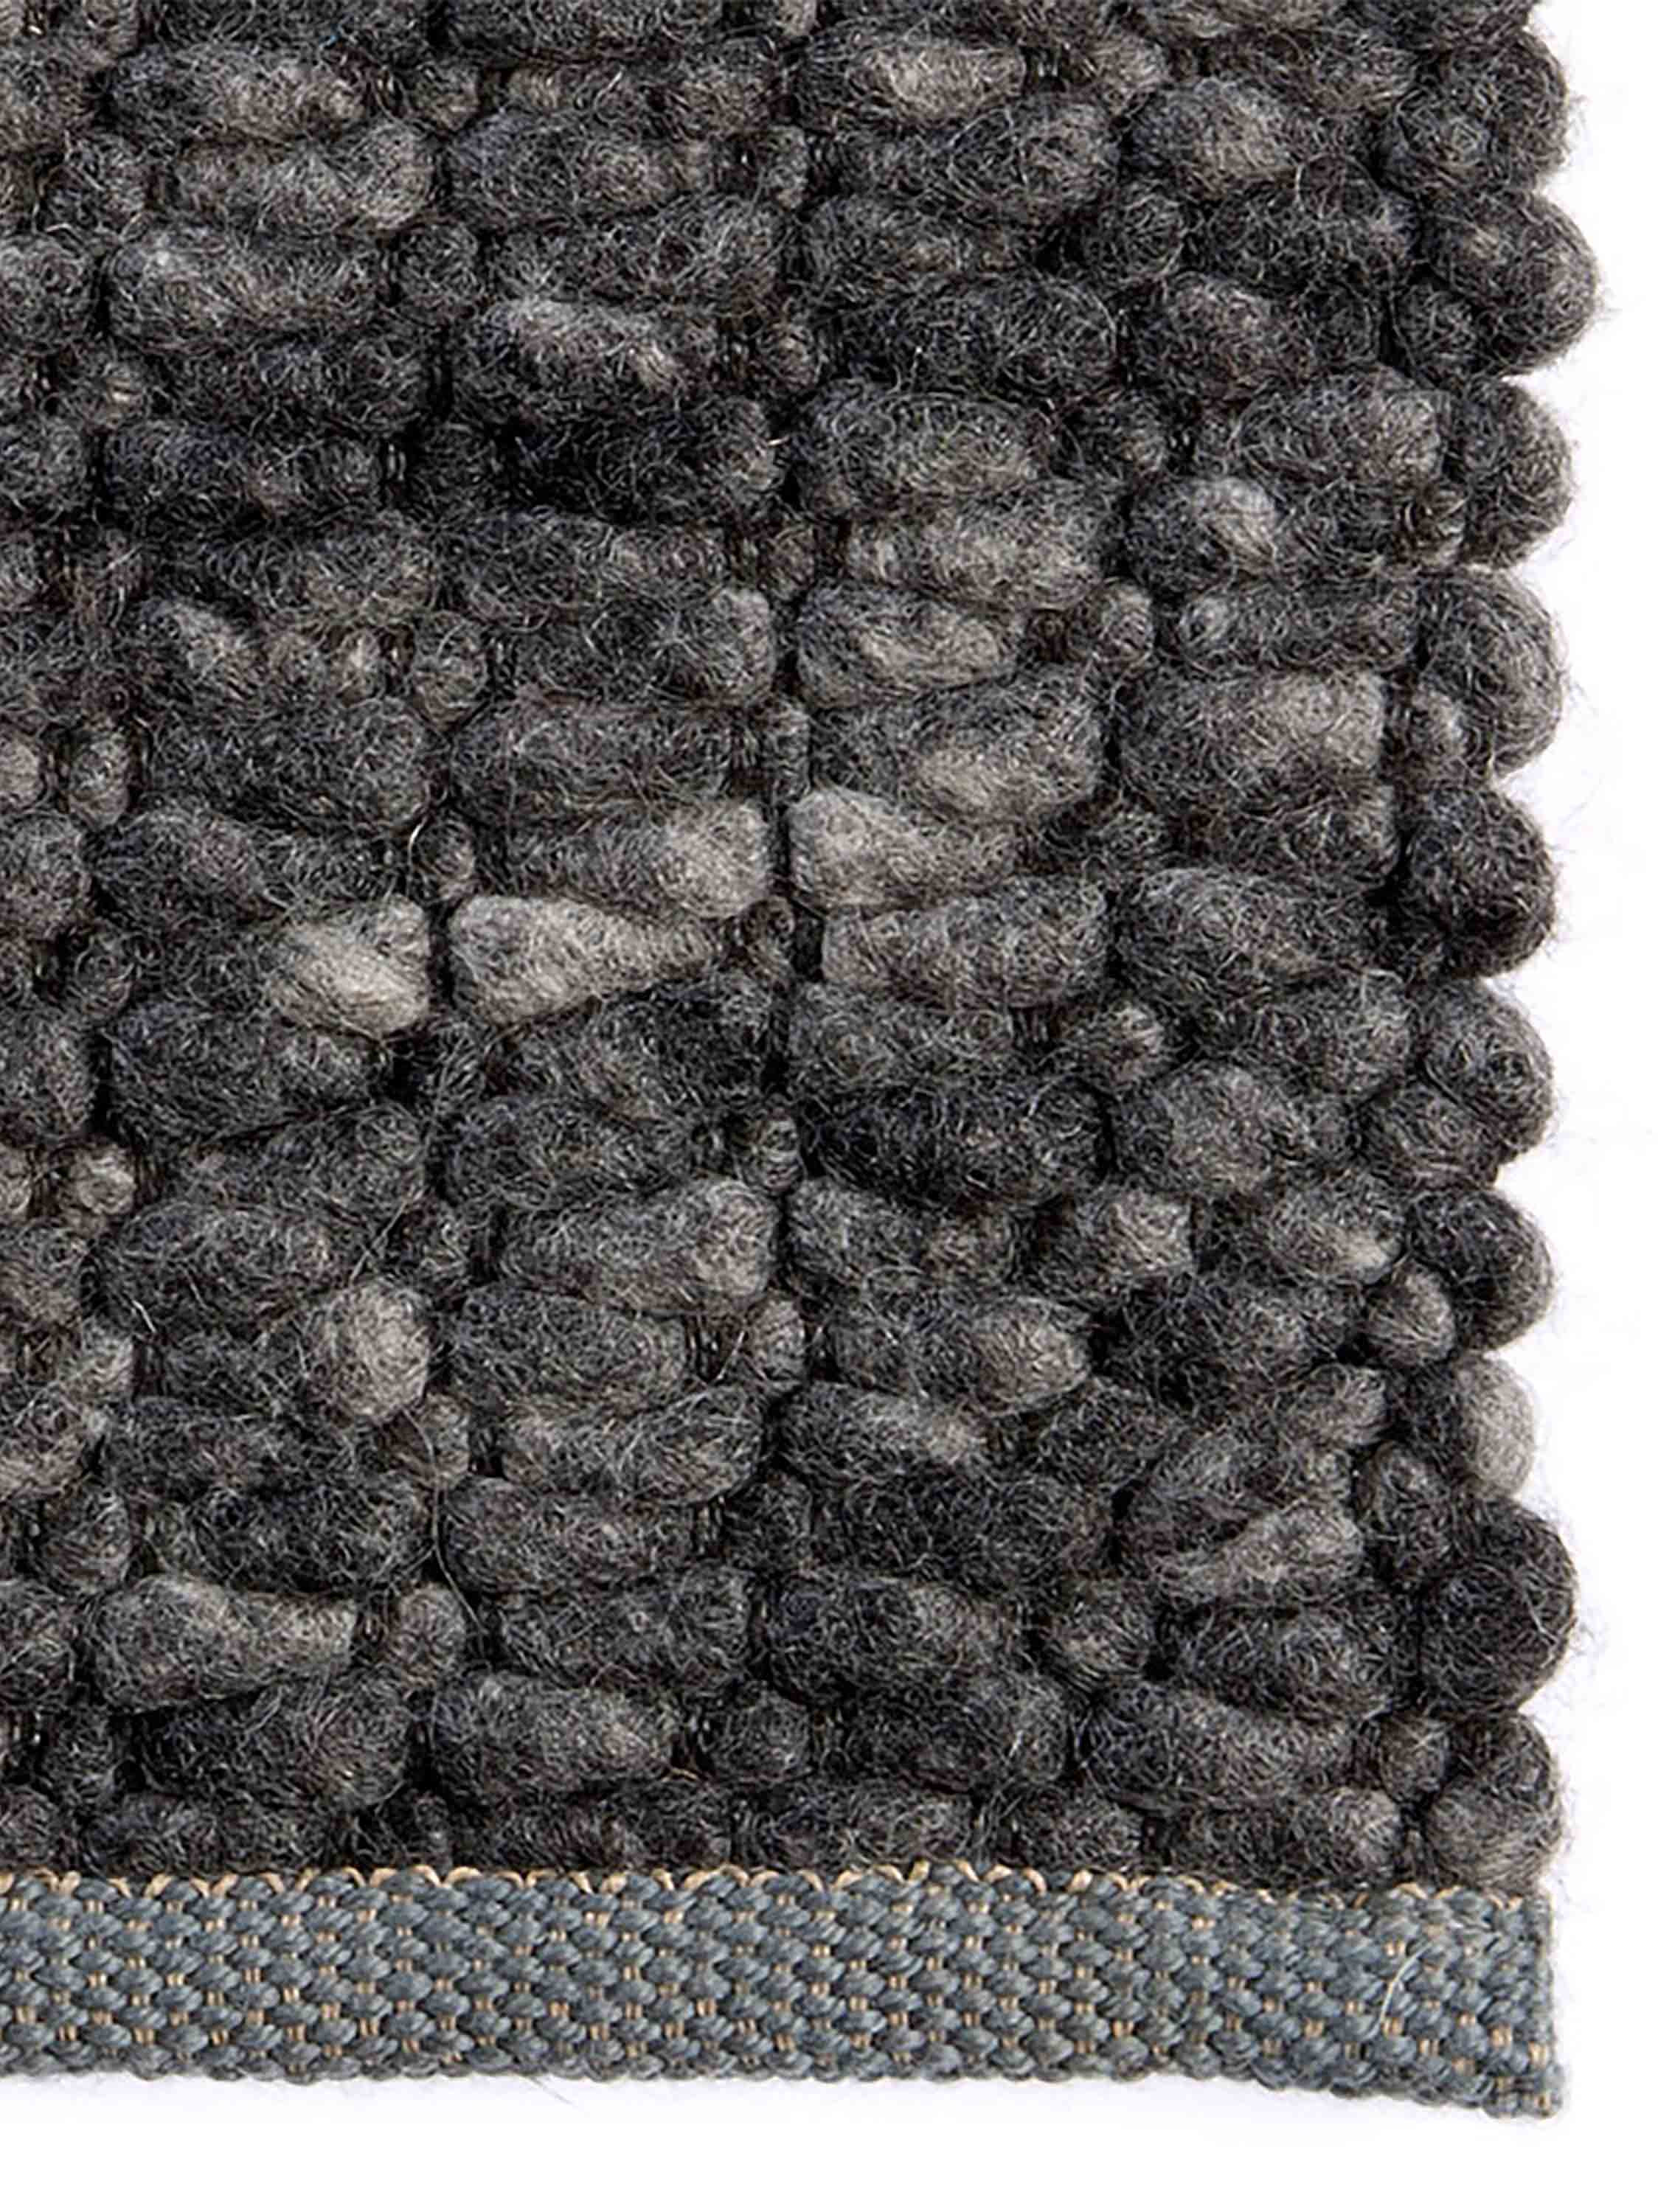 De Munk Carpets - Firenze 08 - 200x250 cm Vloerkleed